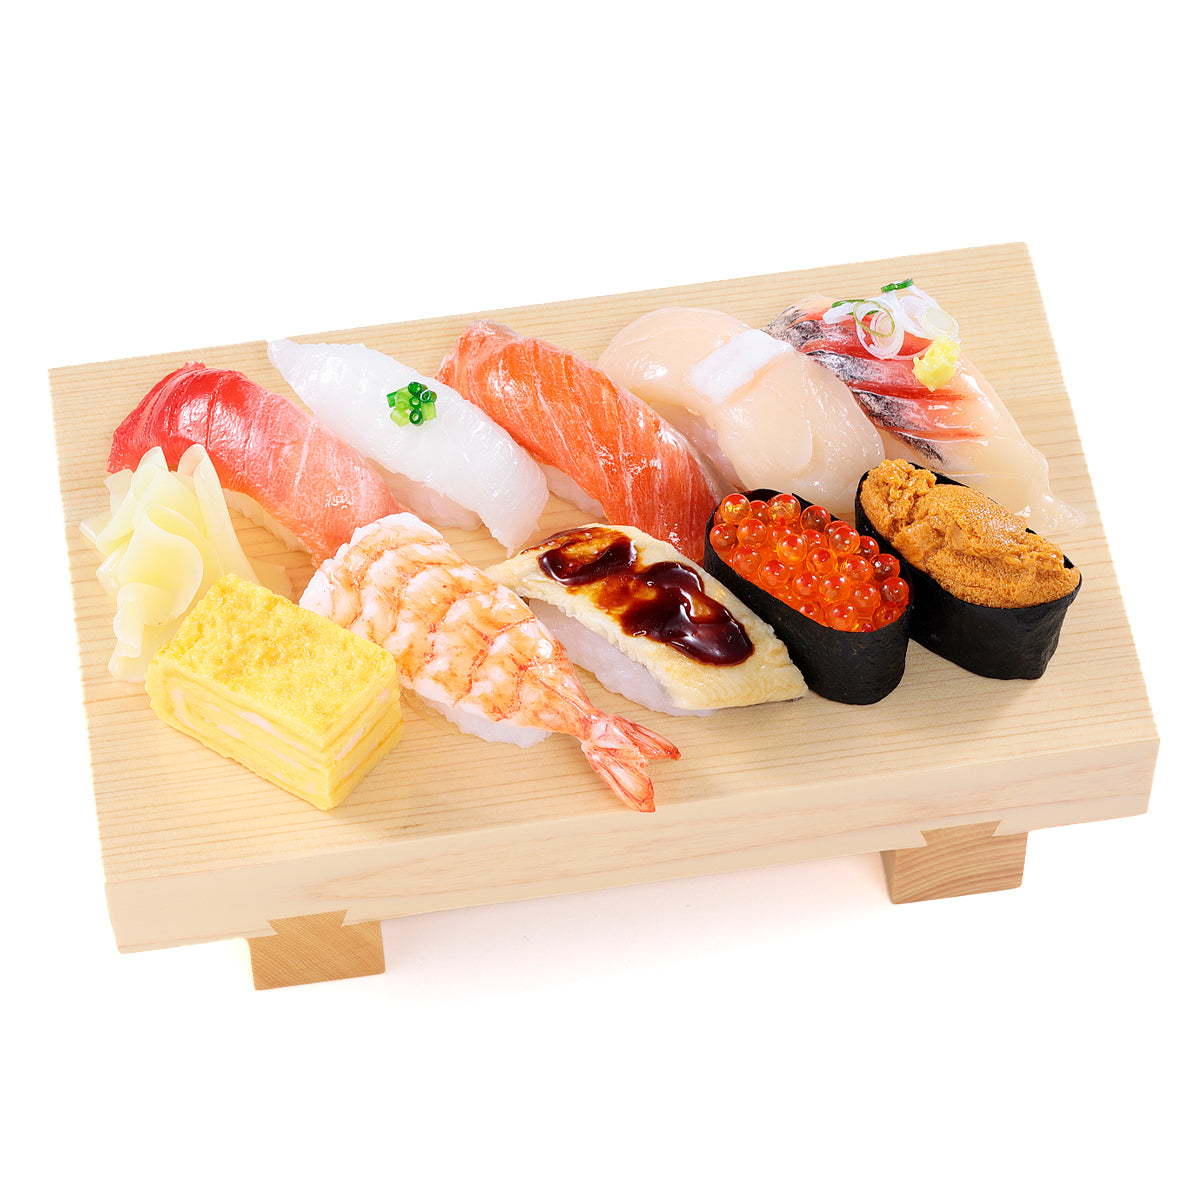 オリジナル食品サンプル「握り寿司」の商品画像です。(英語表記)sushi of replica food